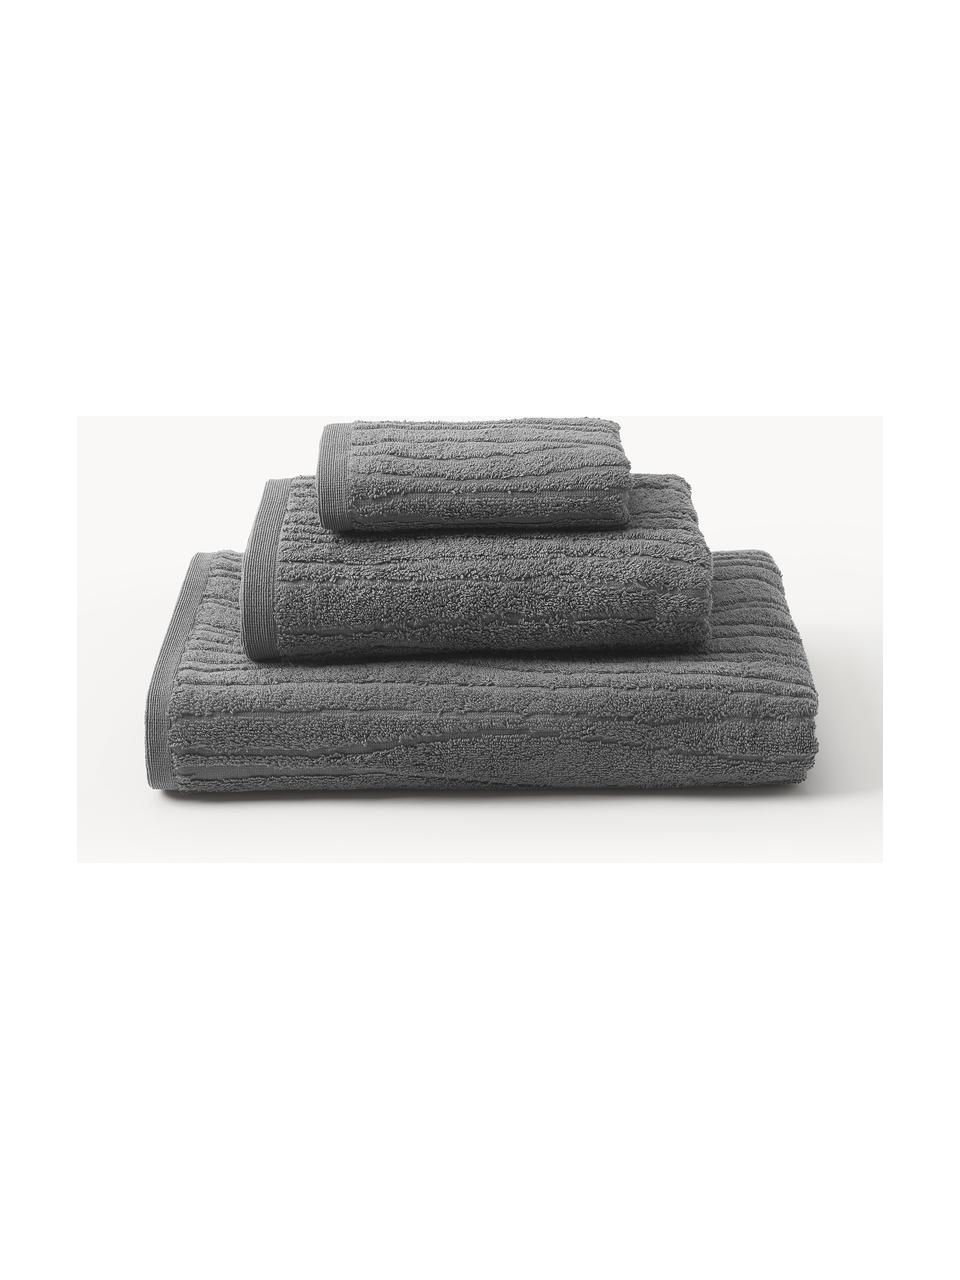 Sada ručníků Audrina, různé velikosti sady, Tmavě šedá, Sada s různými velikostmi